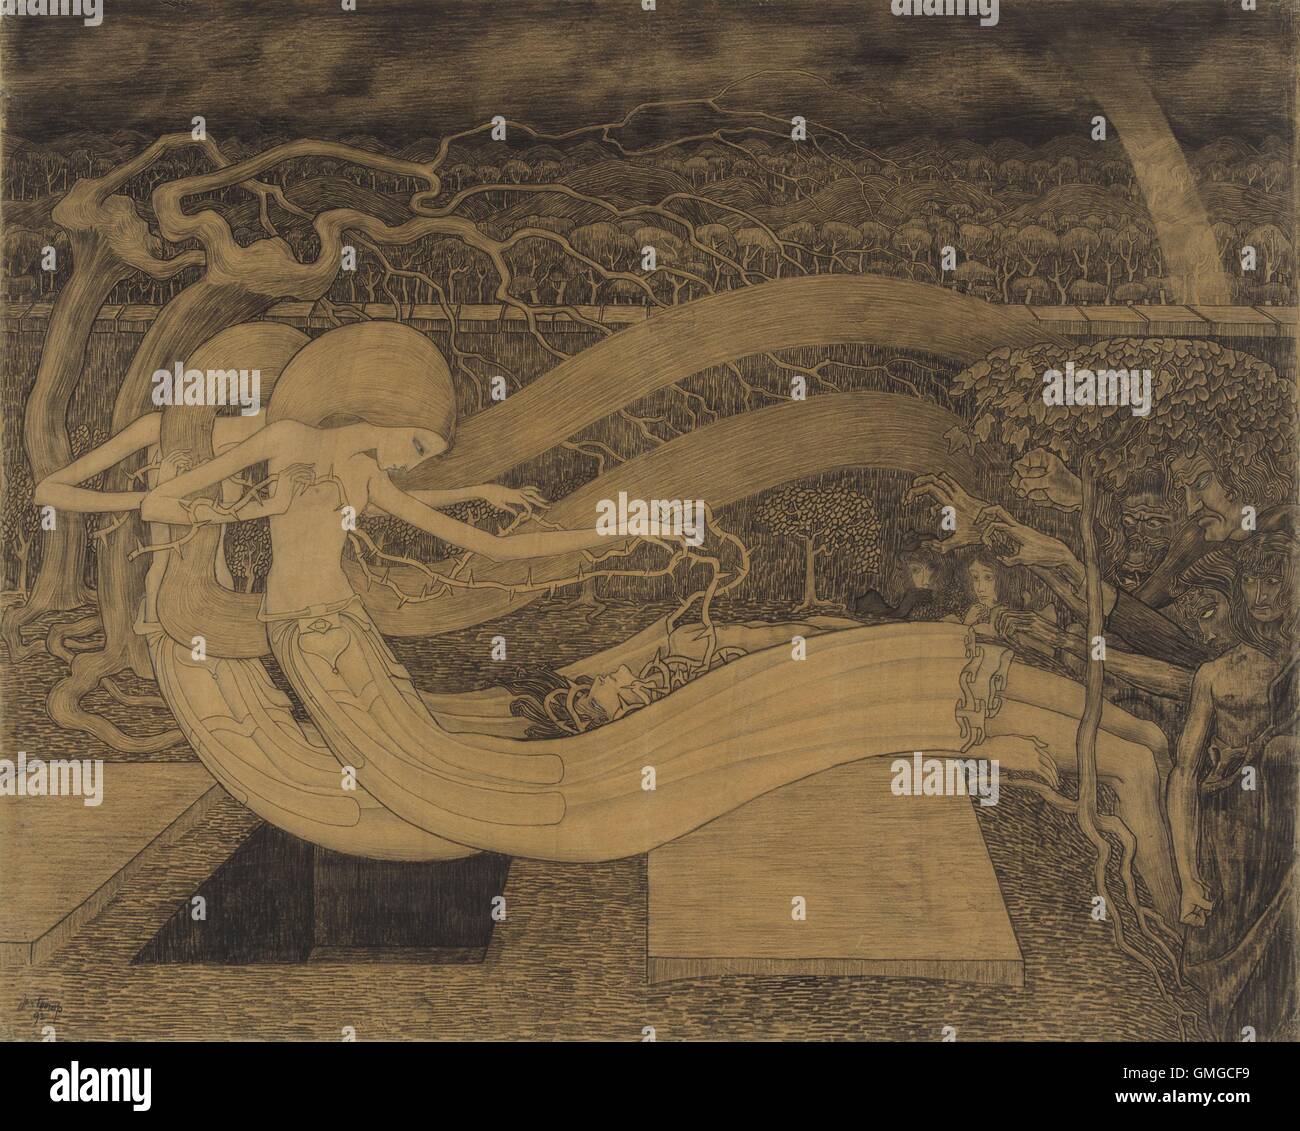 O Grave dove è la tua vittoria?, ma Jan Toorop, 1892, disegno Olandese,  gesso su carta. La morte, il mostro con figure sulla sinistra, guardare a  questo Uomo intrecciano con rami spinosi,